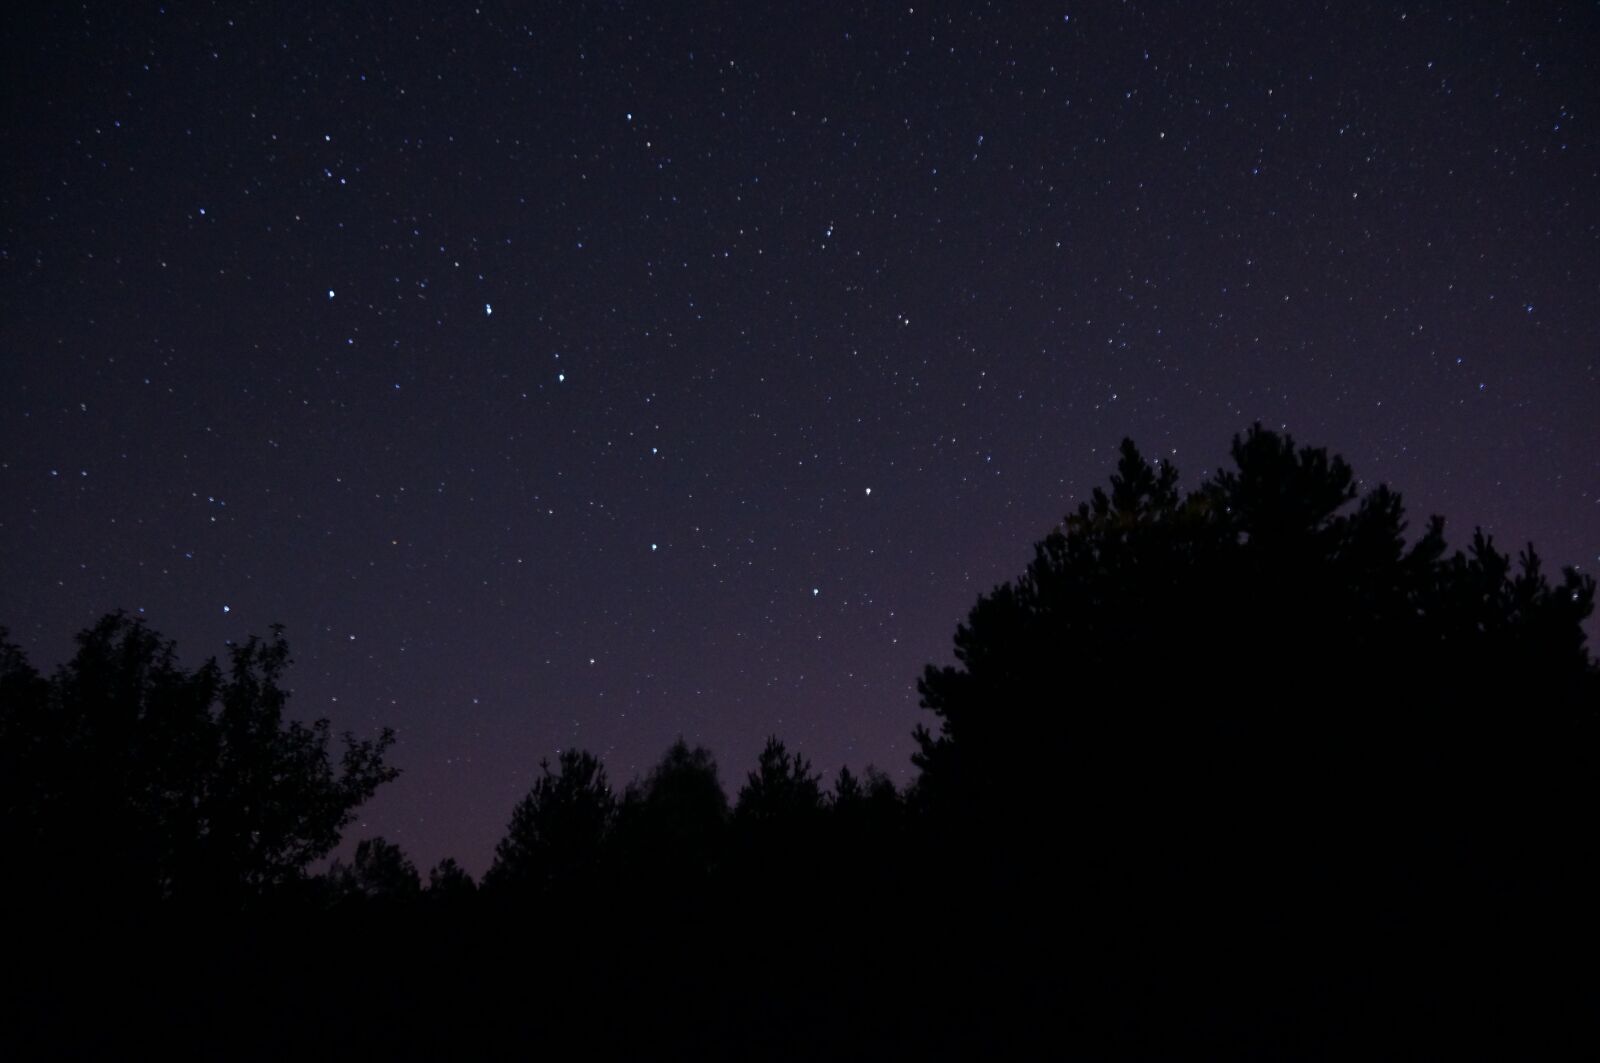 Sony E 18-200mm F3.5-6.3 OSS sample photo. Night, sky, stars photography